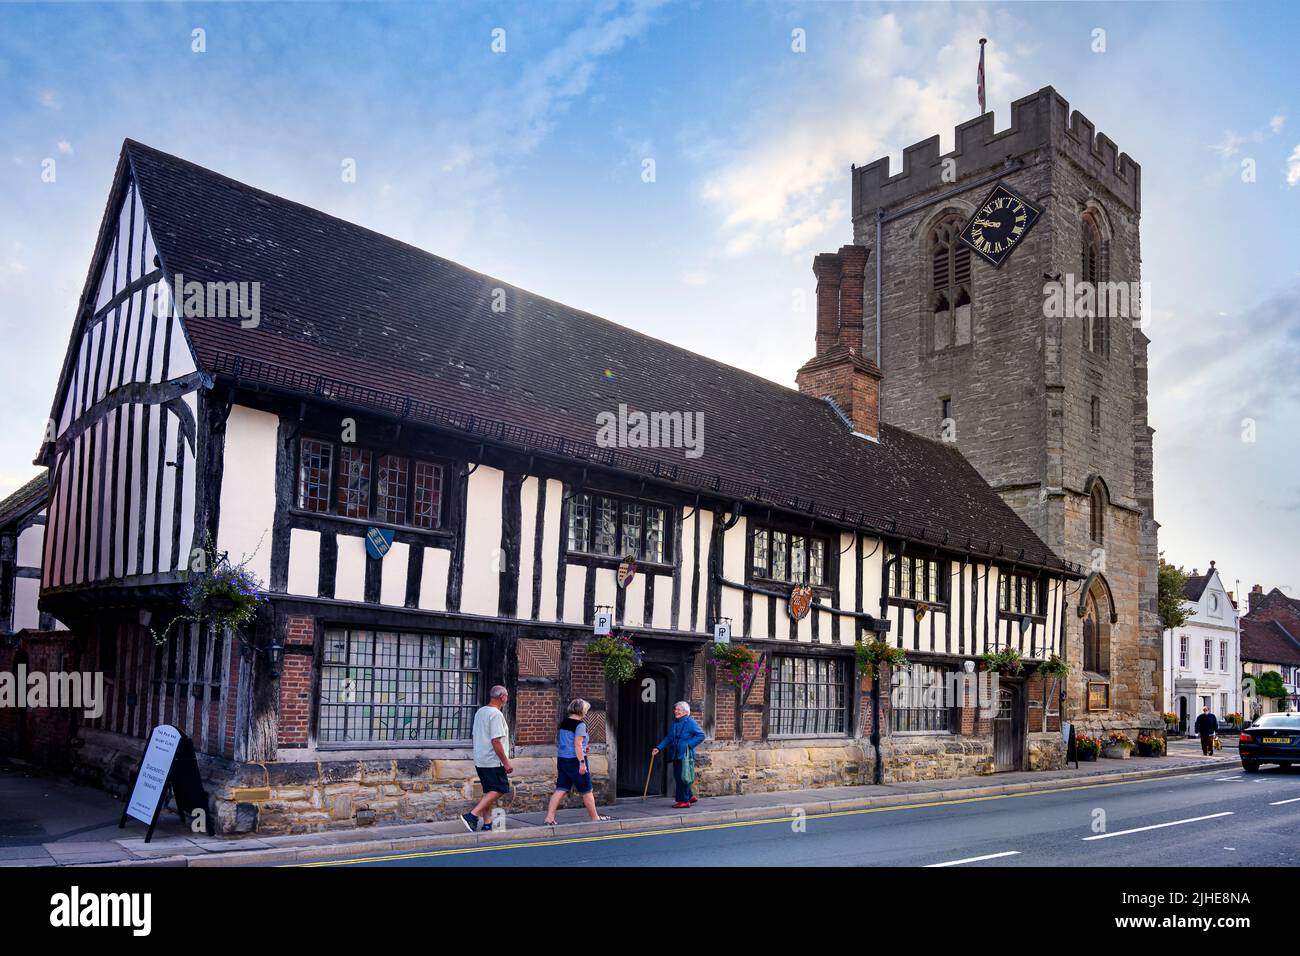 Die guildhall 15 Jahrhundert Holz Fachwerk Eiche gerahmte Gebäude High Street Henley in Arden Warwickshire England Großbritannien Stockfoto